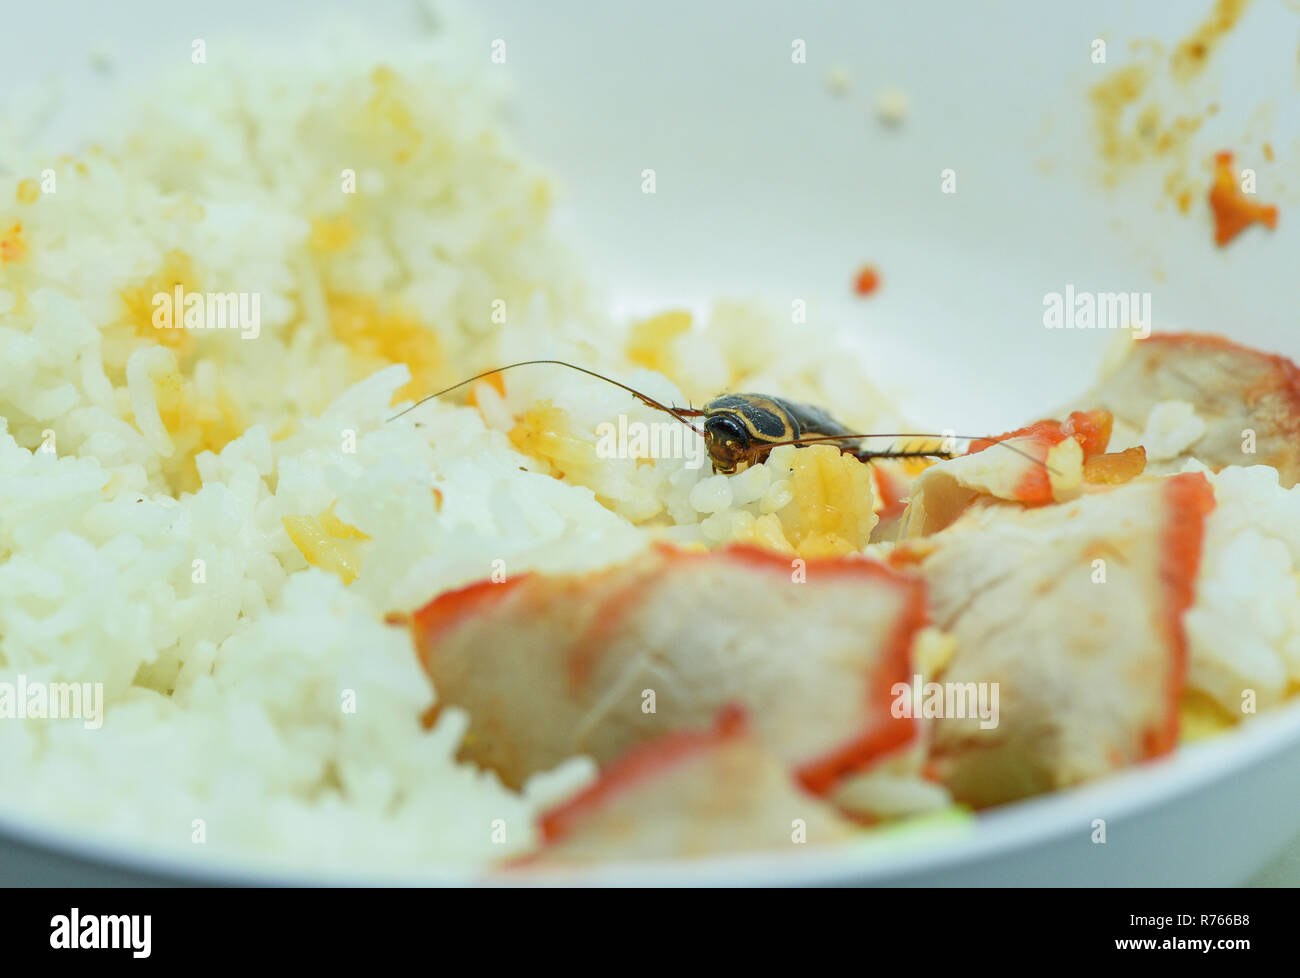 Sporchi alimentari / scarafaggi a mangiare riso cibo vivente nella cucina di casa / close up di scarafaggi sulla ciotola batteri contaminanti alimenti Foto Stock